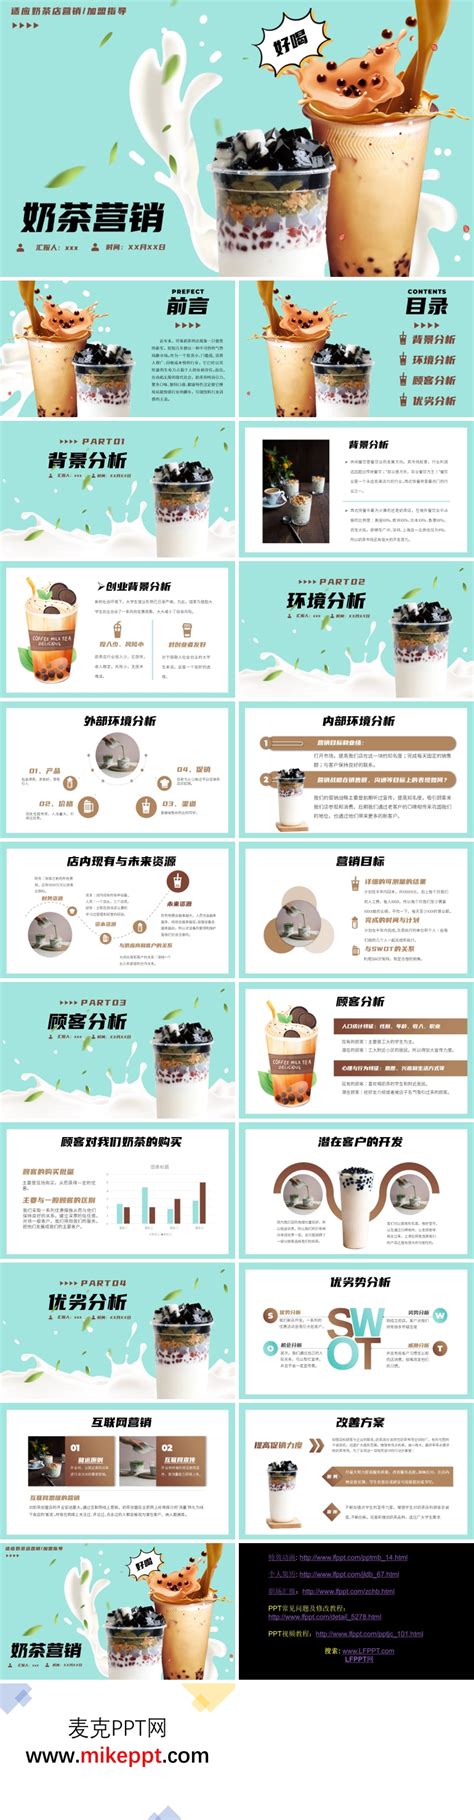 奶茶店新品上市活动设计图片素材_商业促销图片_海报图片_第6张_红动中国